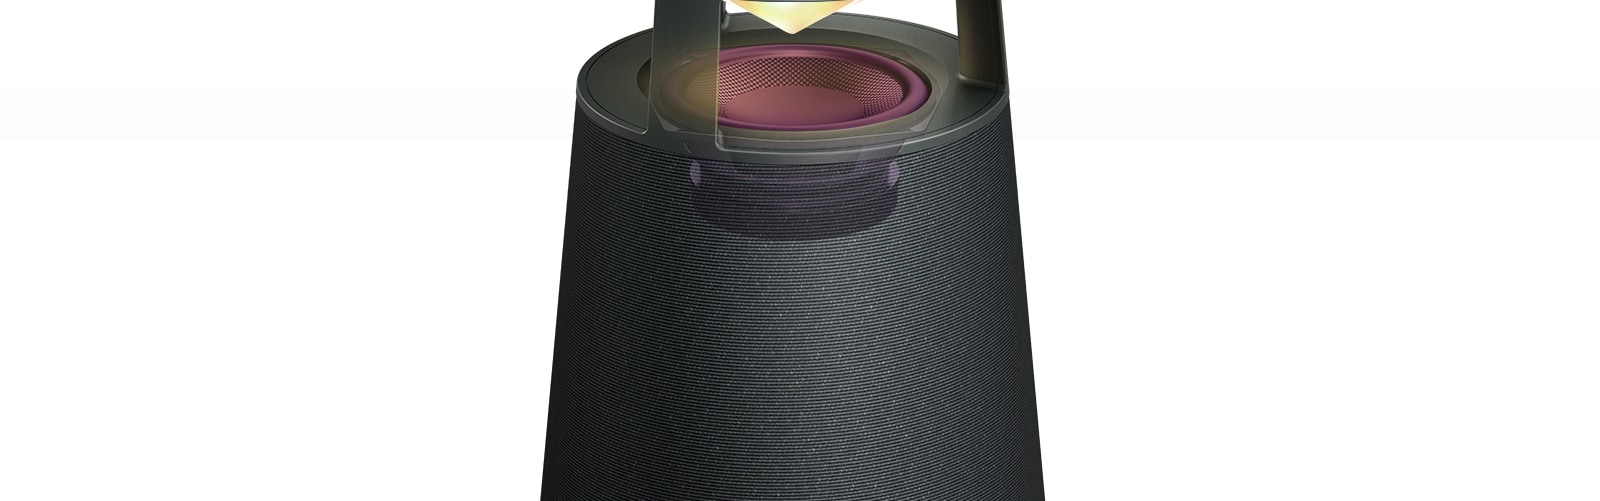 Na slici se prikazuje niskofrekvencijski zvučnik od staklenih vlakana u sredini uređaja XBOOM 360.